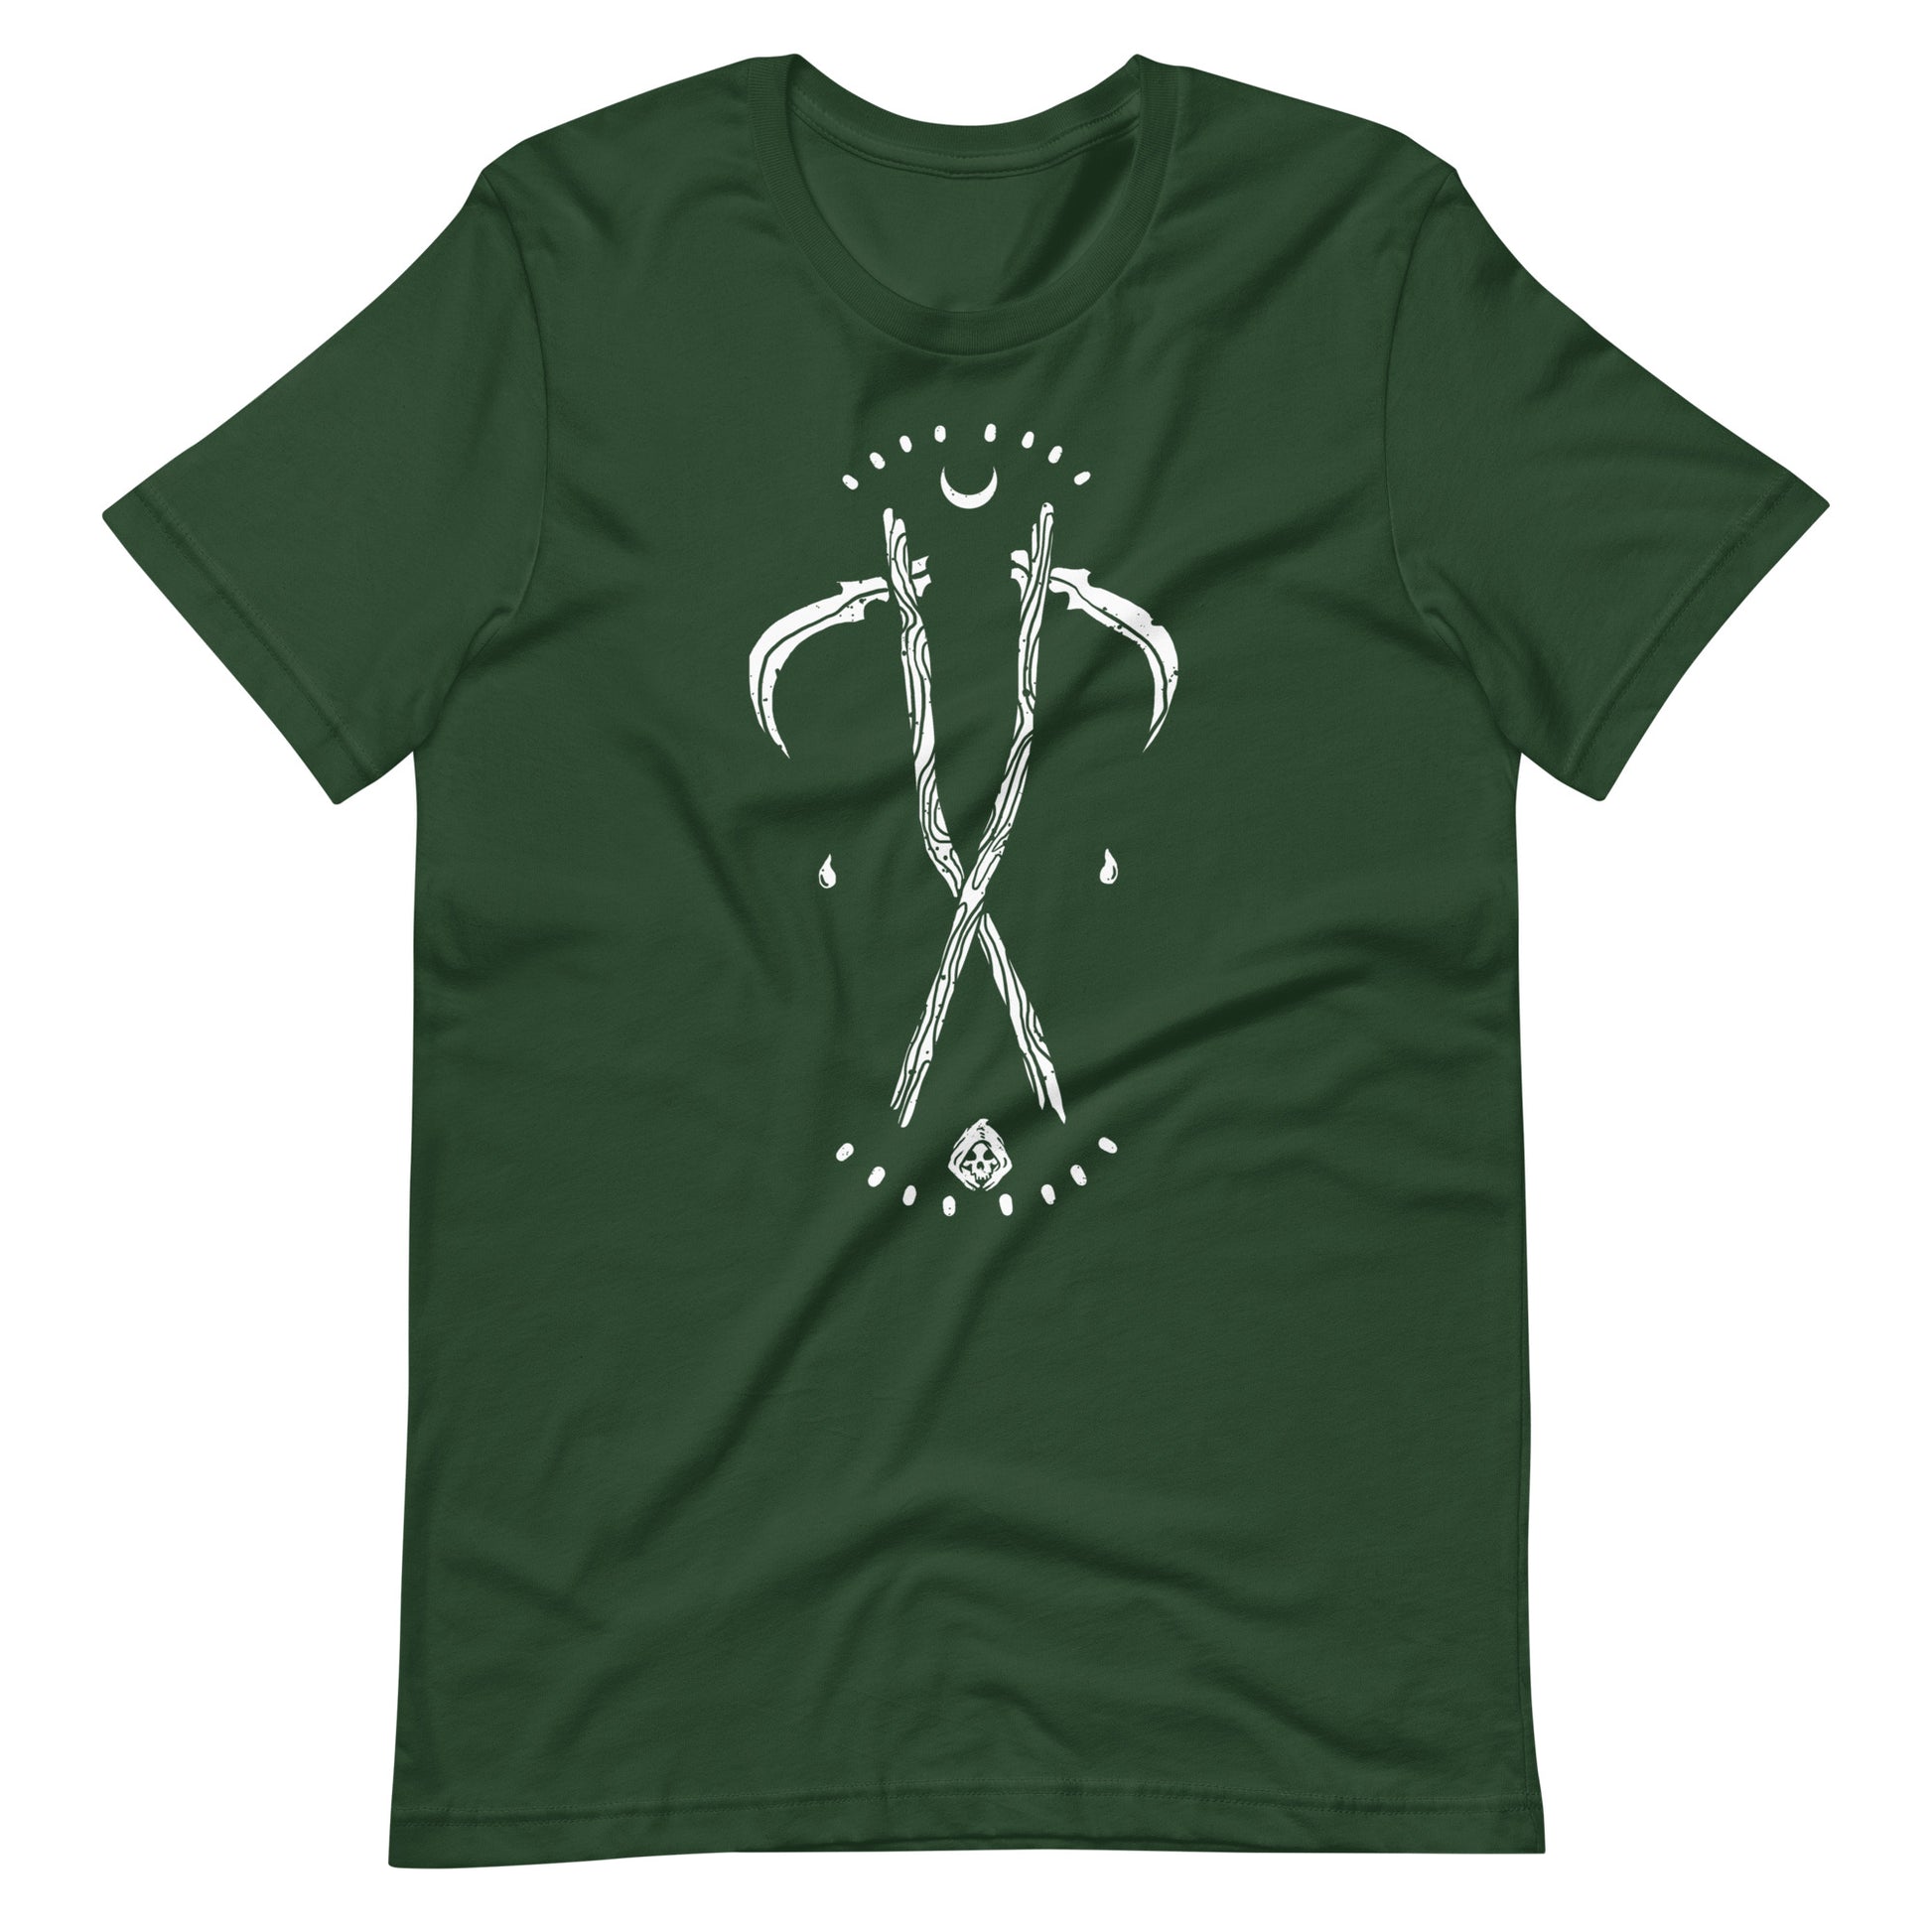 Grim - Men's t-shirt - Forest Front